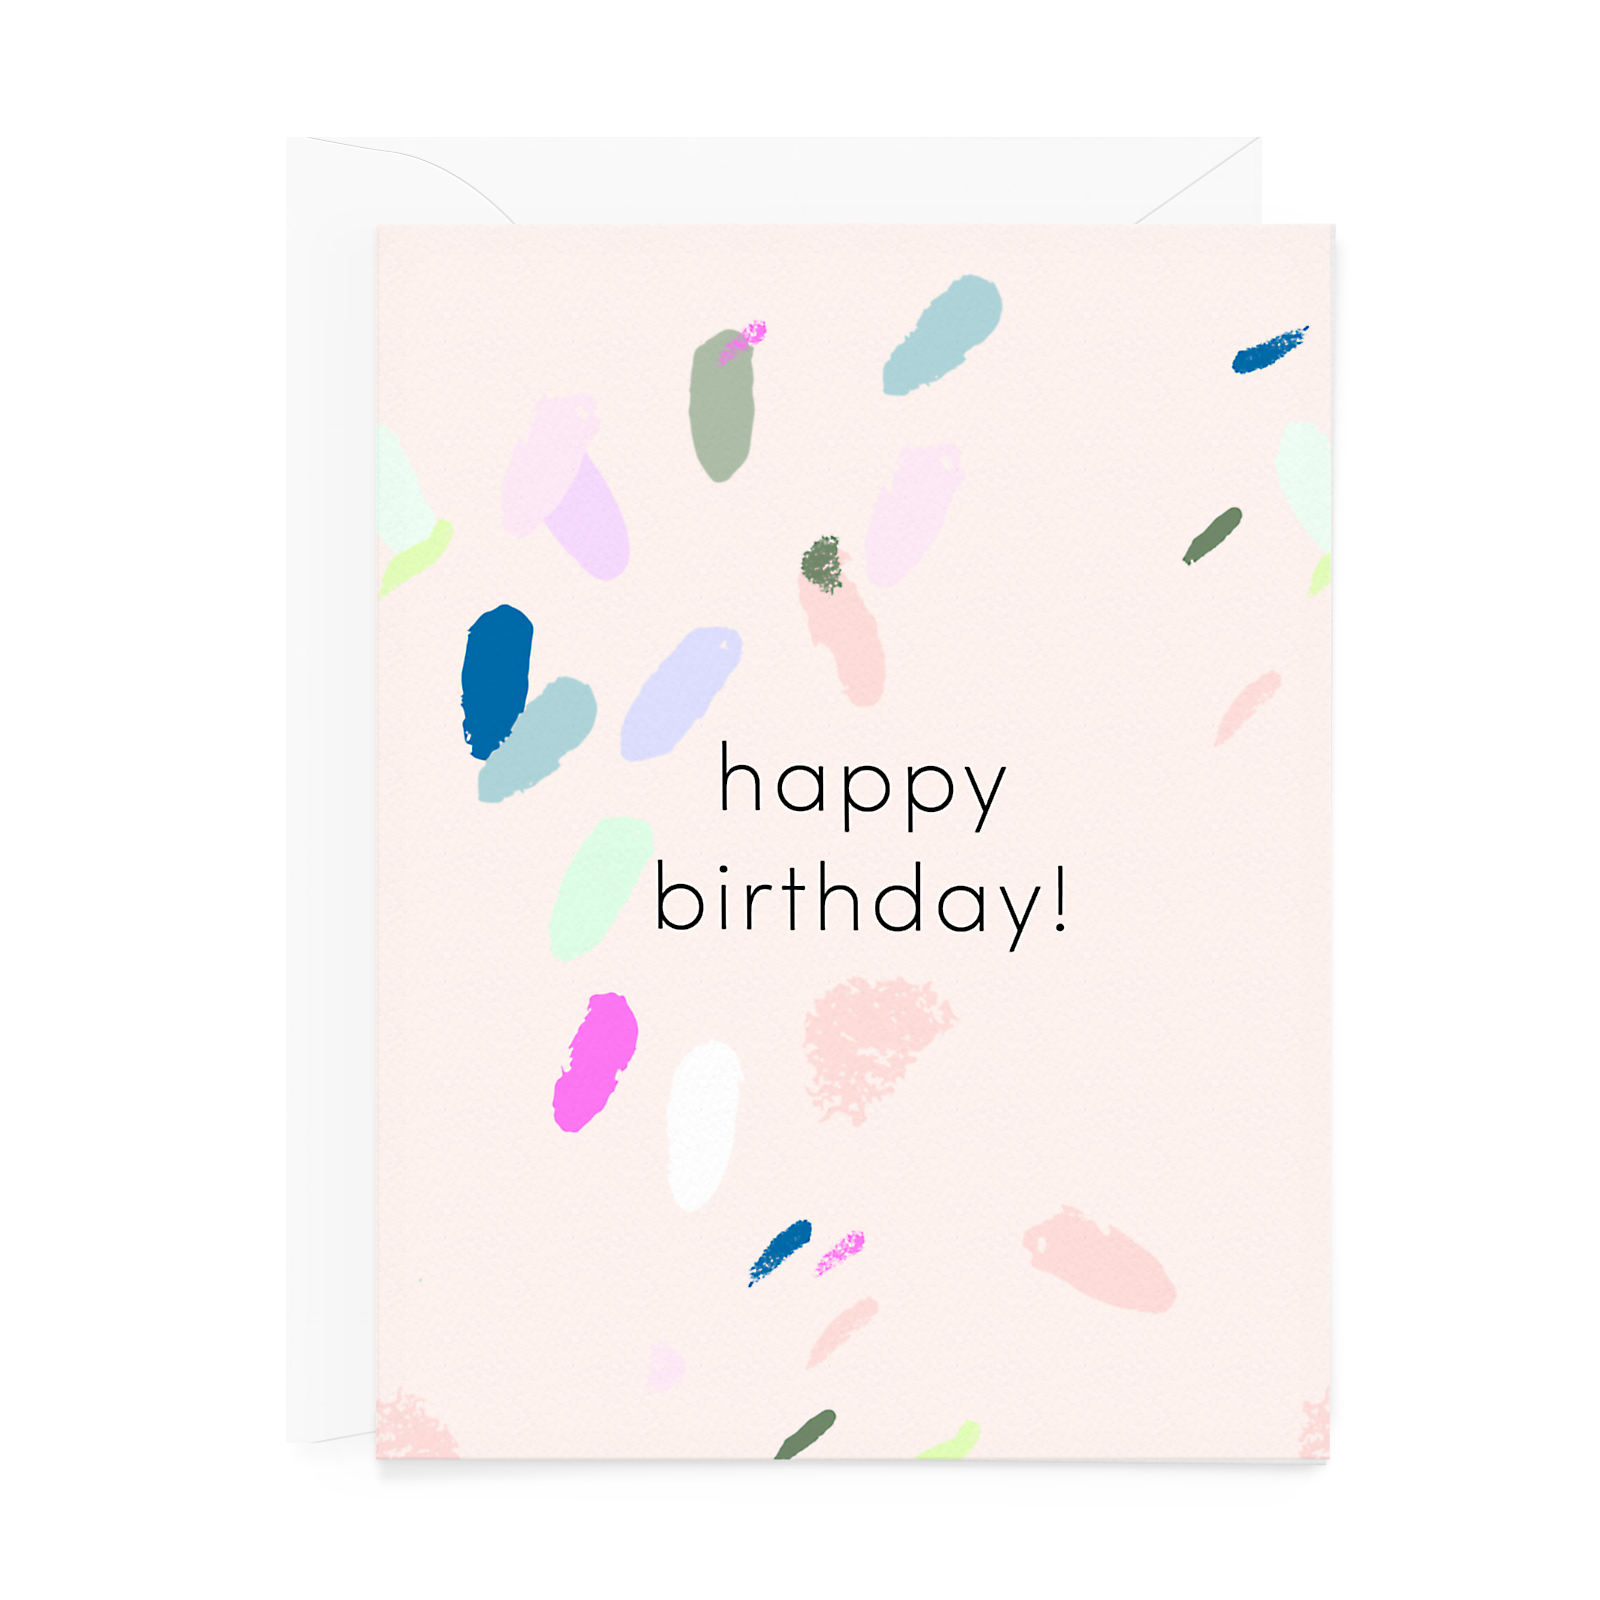 Happy Birthday Card - Blush Brushstrokes